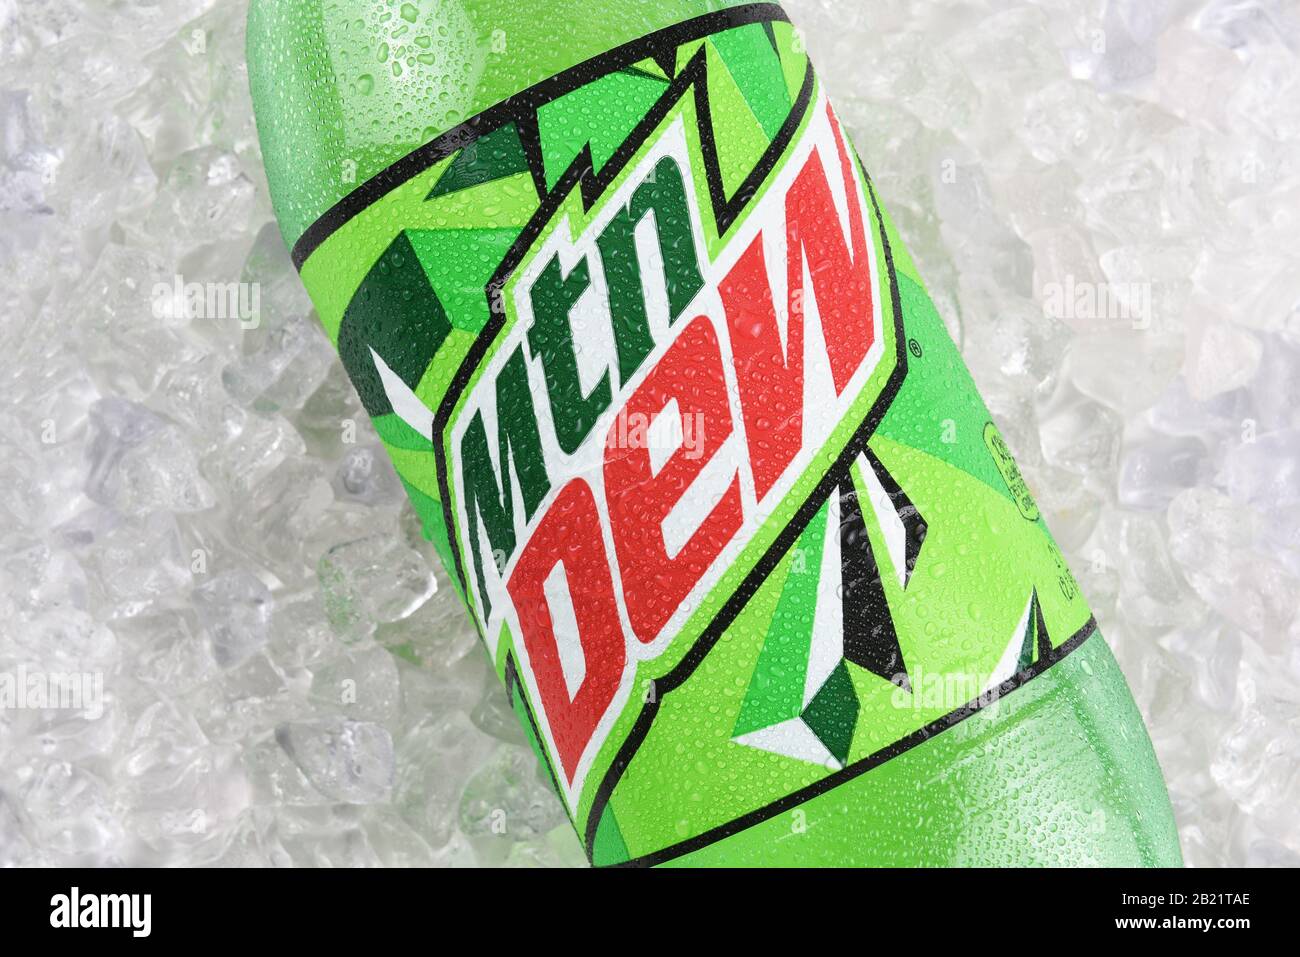 Irvine, CALIFORNIA, 17 DICEMBRE 2017: MTN Dew Bottle Closeup su ghiaccio. Mountain Dew è una bevanda analcolica di agrumi carbonata prodotta e di proprietà di PepsiCo. Foto Stock